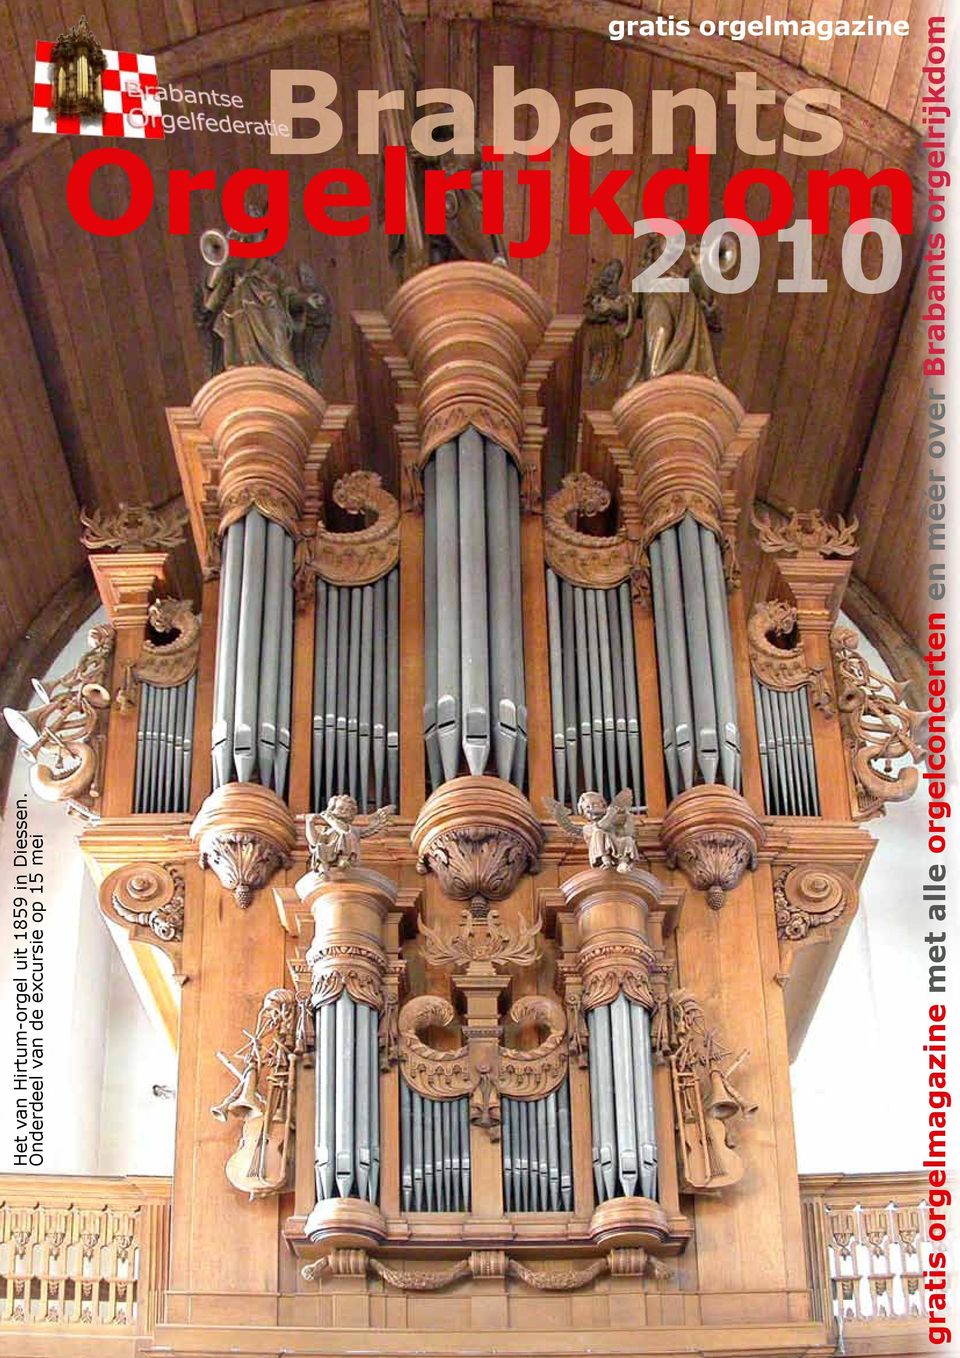 Brabants Orgelrijkdom 2010 Het van Hirtum-orgel uit